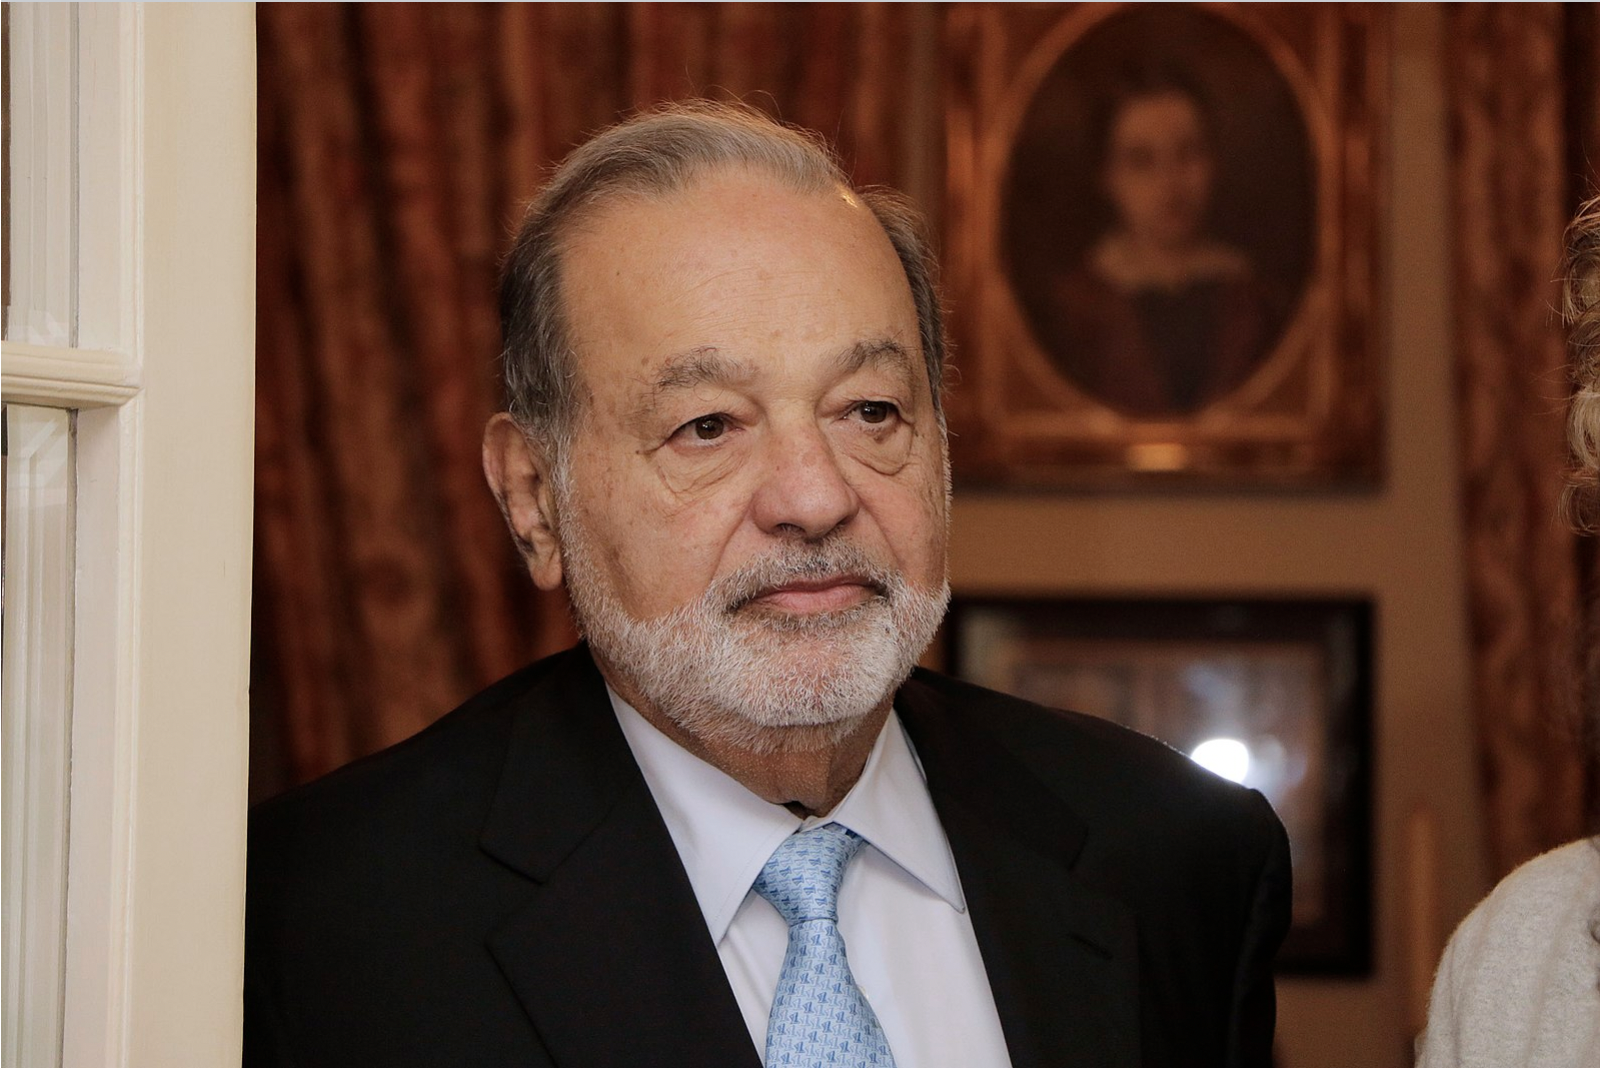 Carlos Slim, fot. Wikipedia